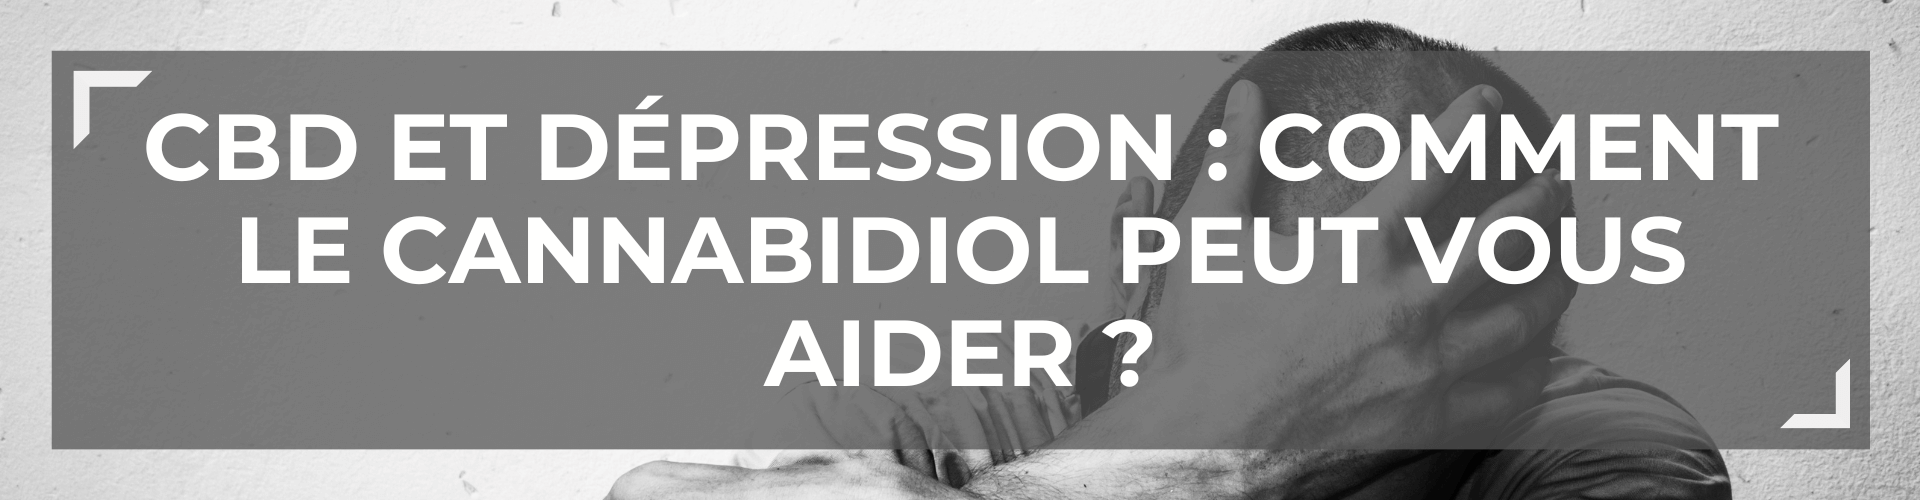 CBD et Dépression : Comment le Cannabidiol peut-il vous aider naturellement ? 